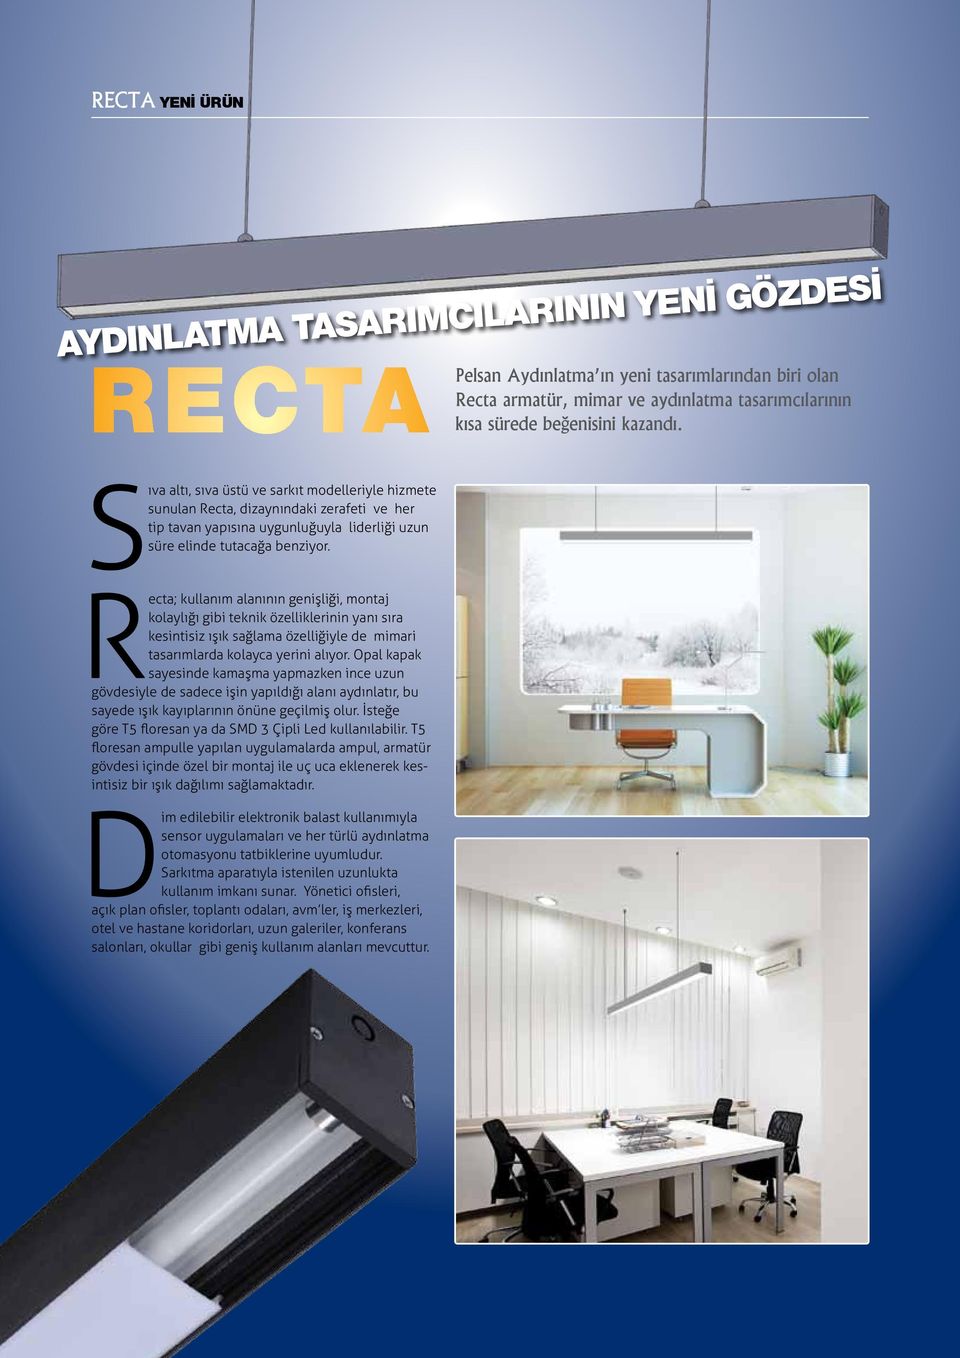 Recta; kullanım alanının genişliği, montaj kolaylığı gibi teknik özelliklerinin yanı sıra kesintisiz ışık sağlama özelliğiyle de mimari tasarımlarda kolayca yerini alıyor.